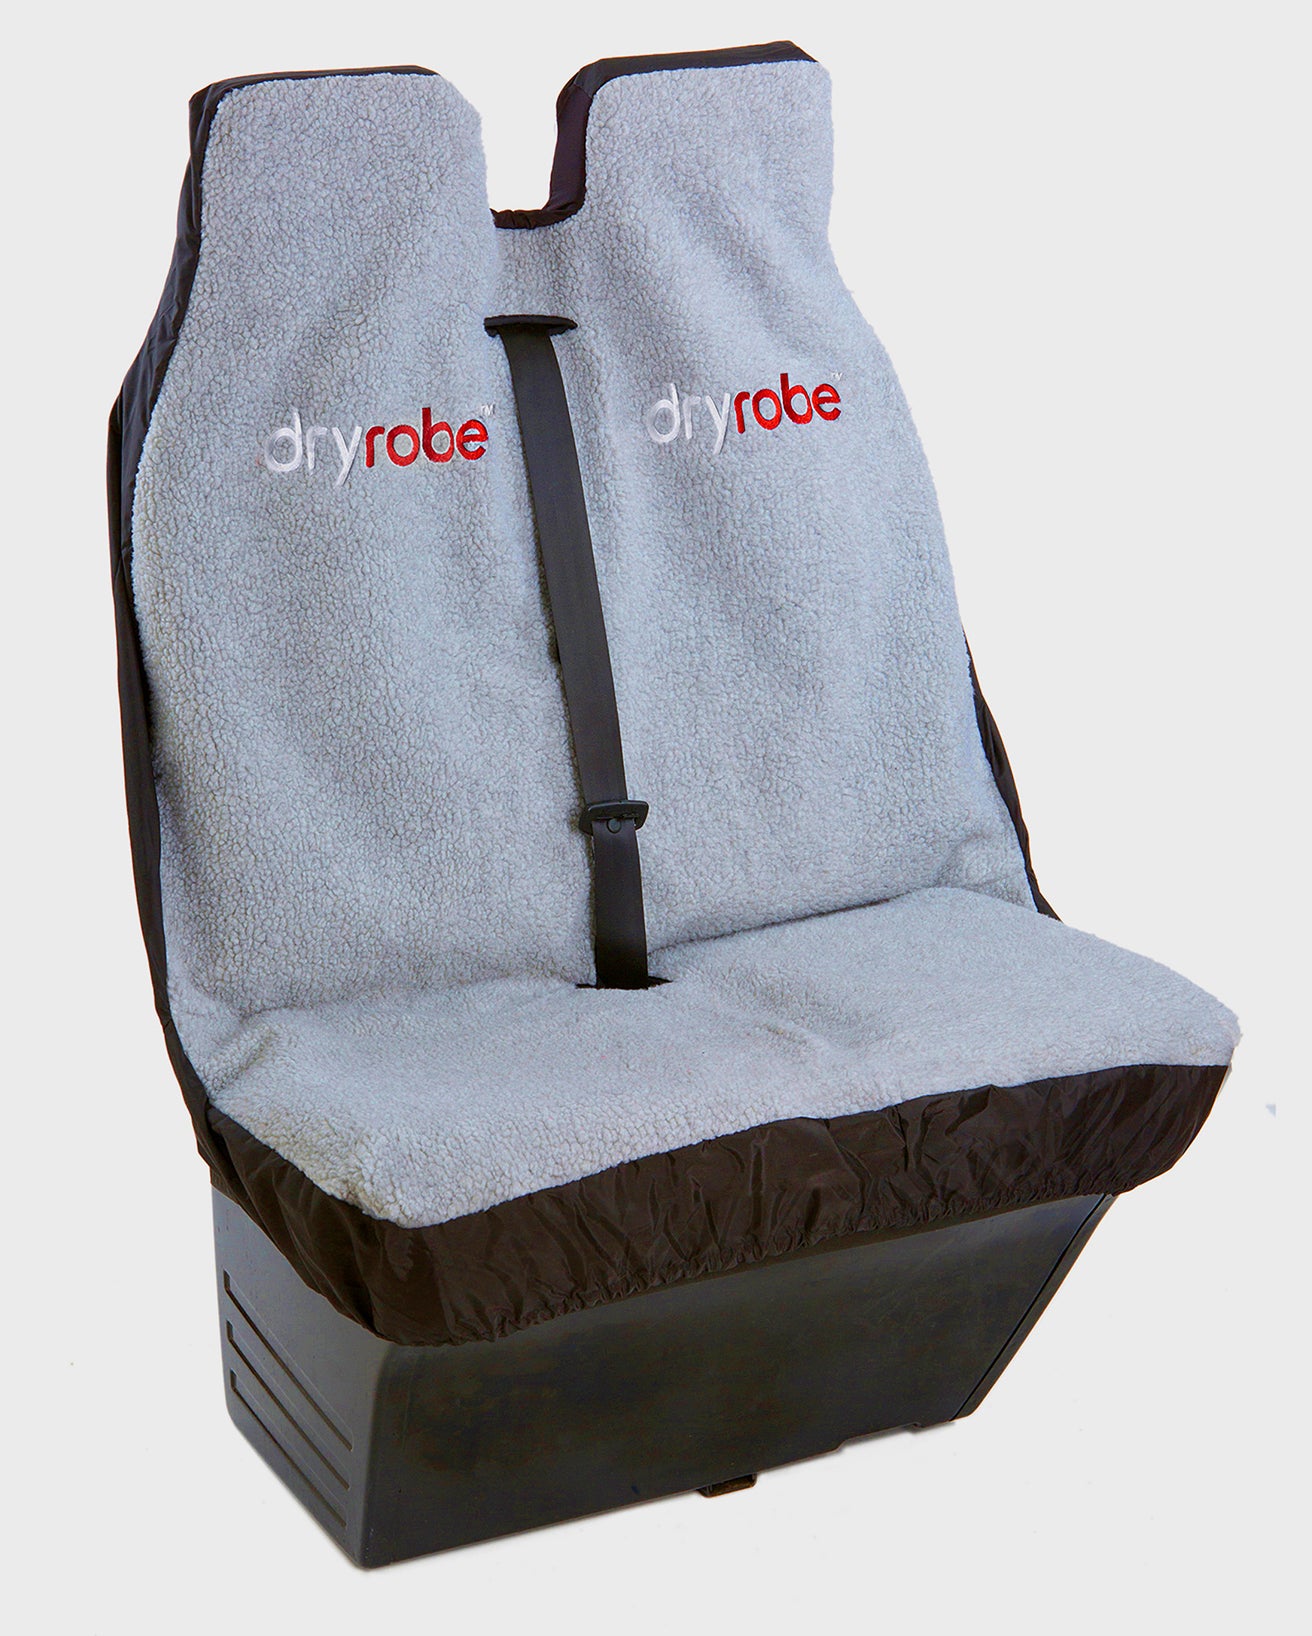 dryrobe Car Seat Cover, Waterproof, Adjustable